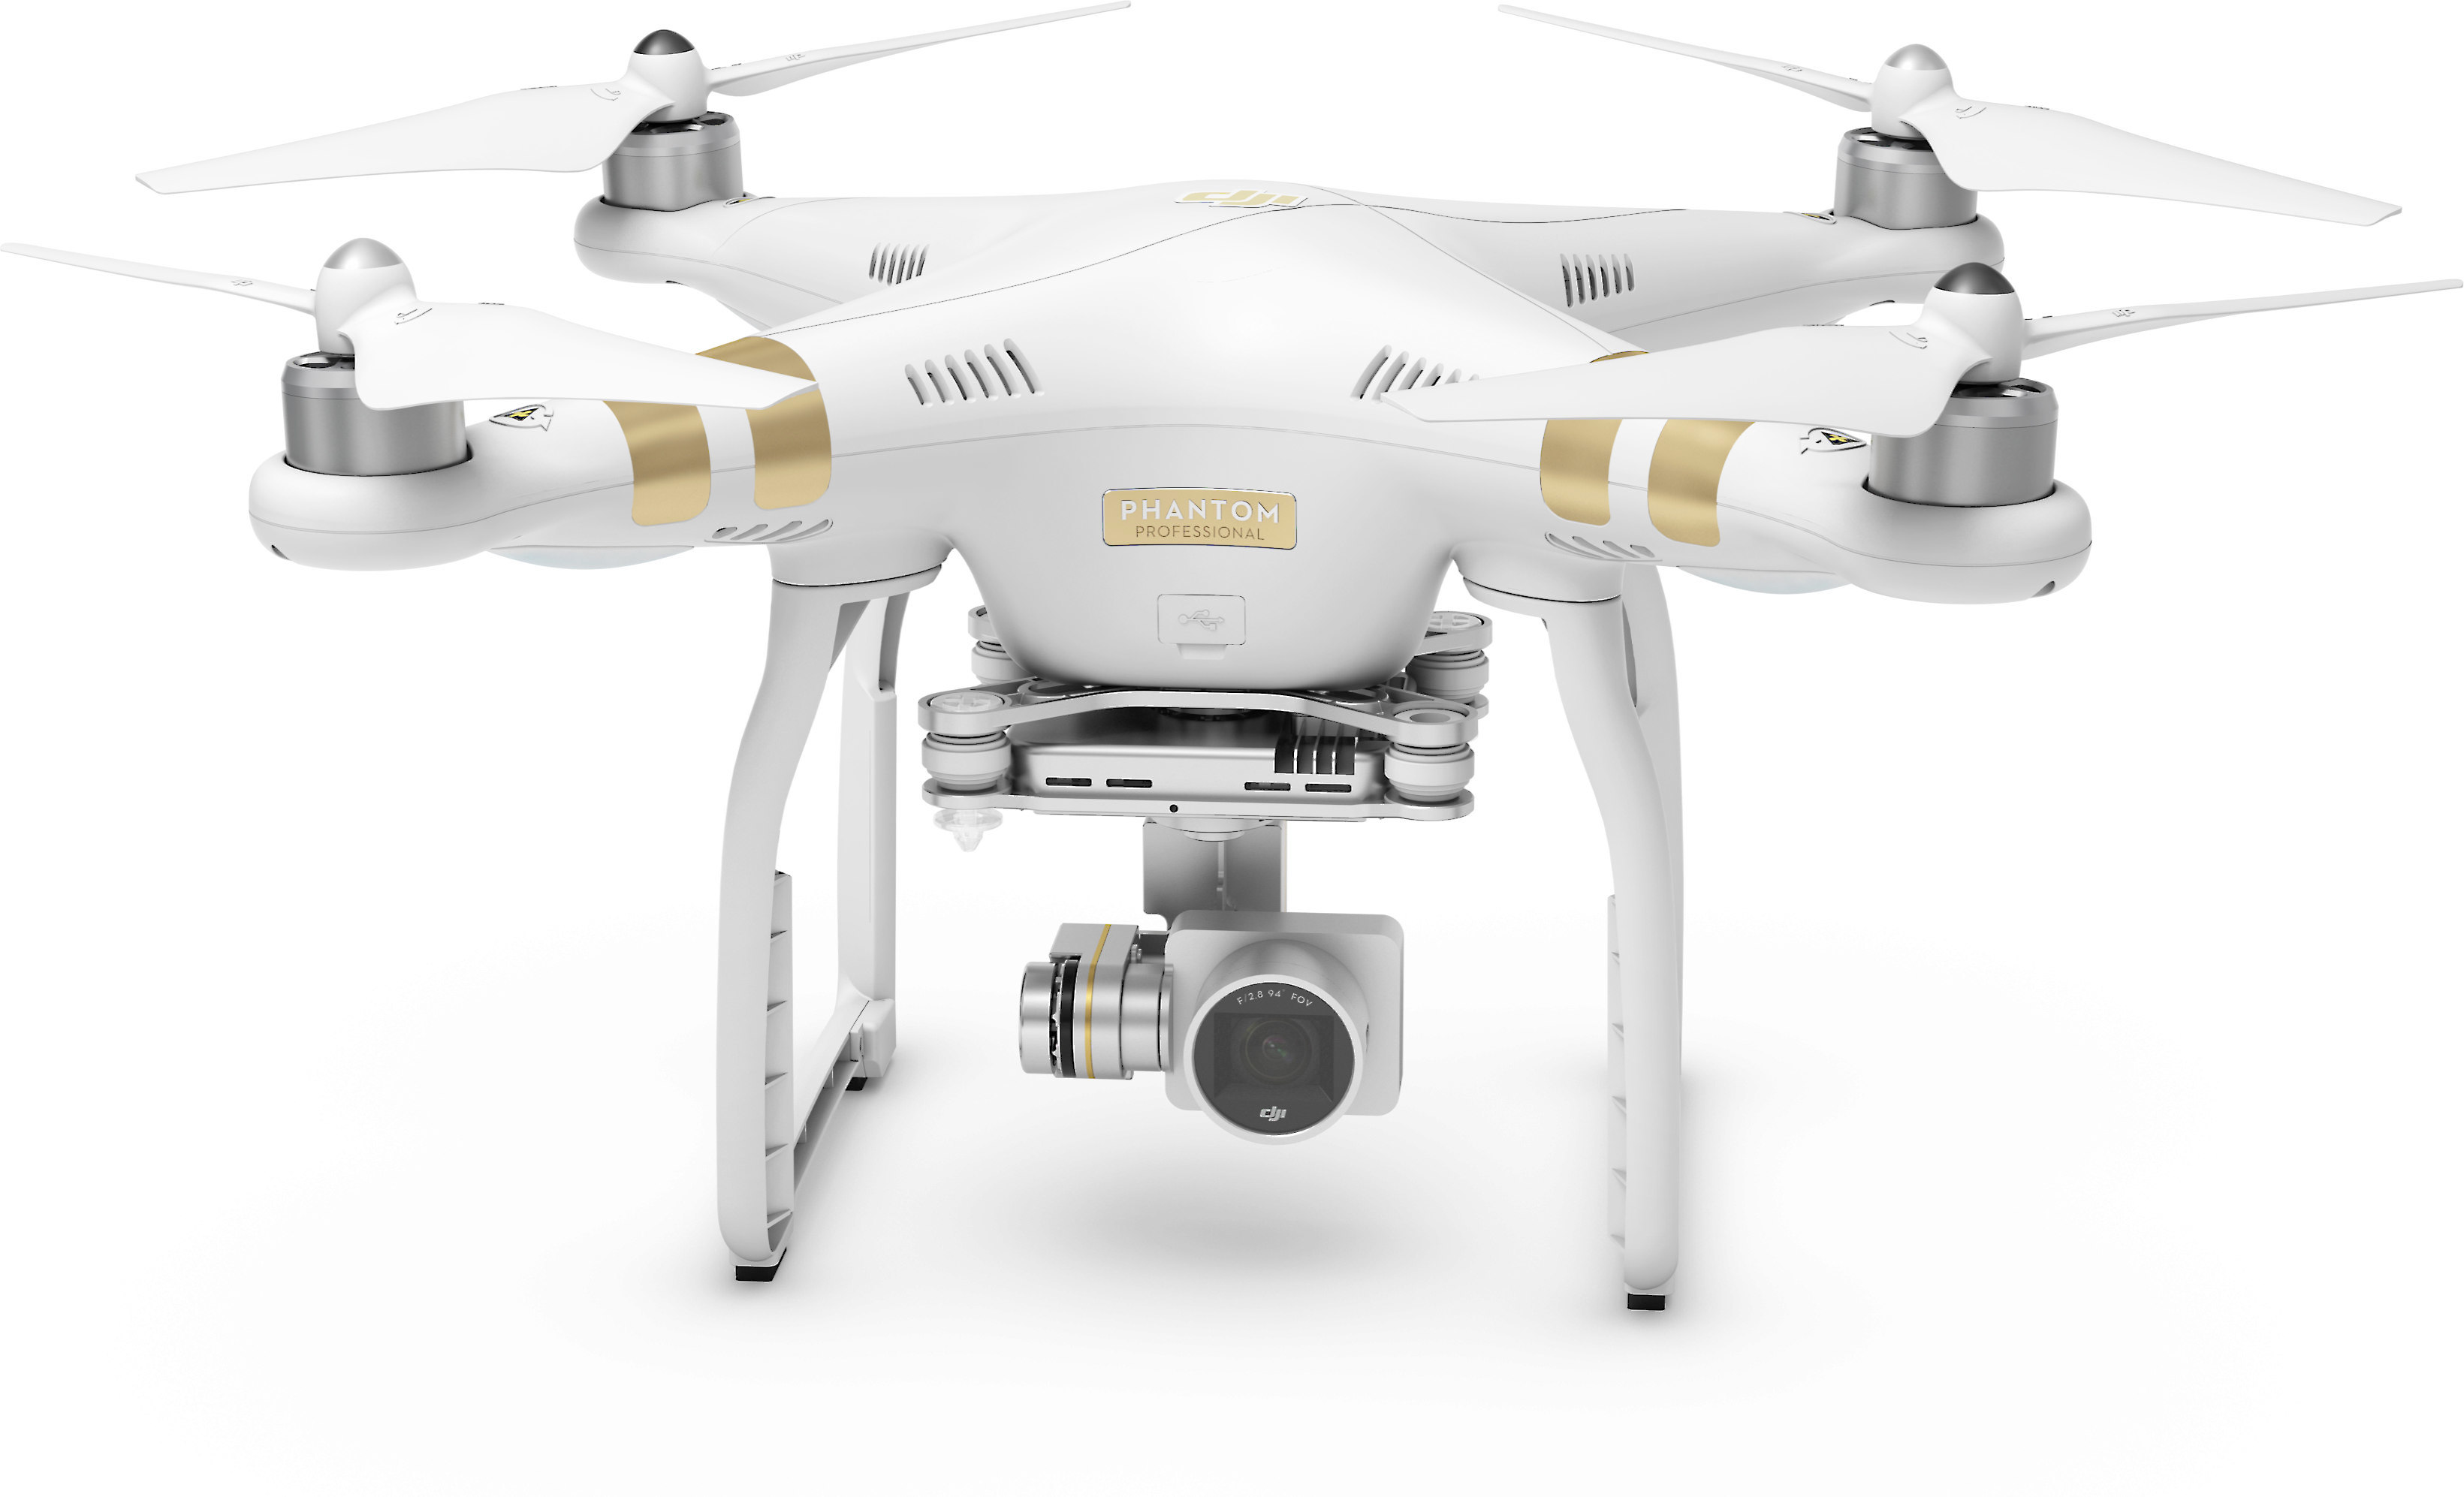 drone with camera phantom 3